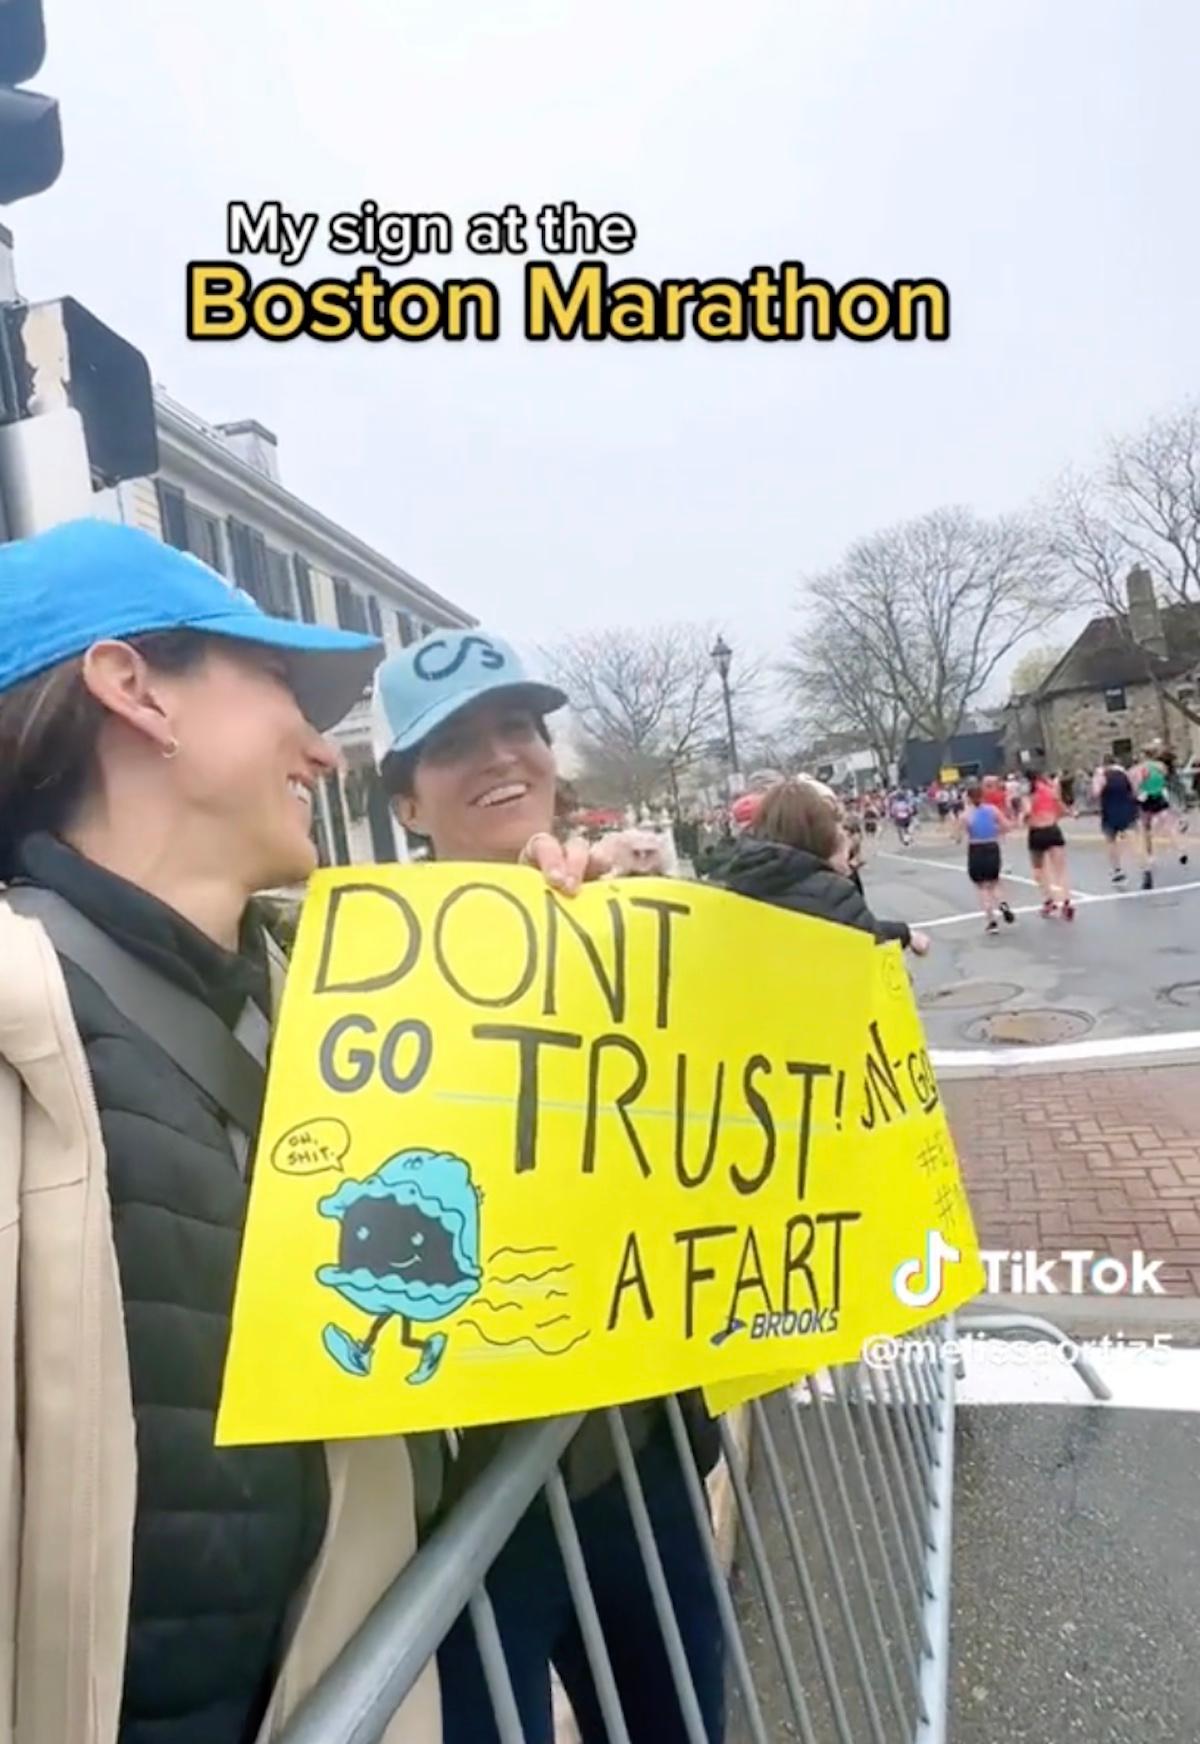 举着牌子的女人说 "不要相信一个屁" 在马拉松比赛中